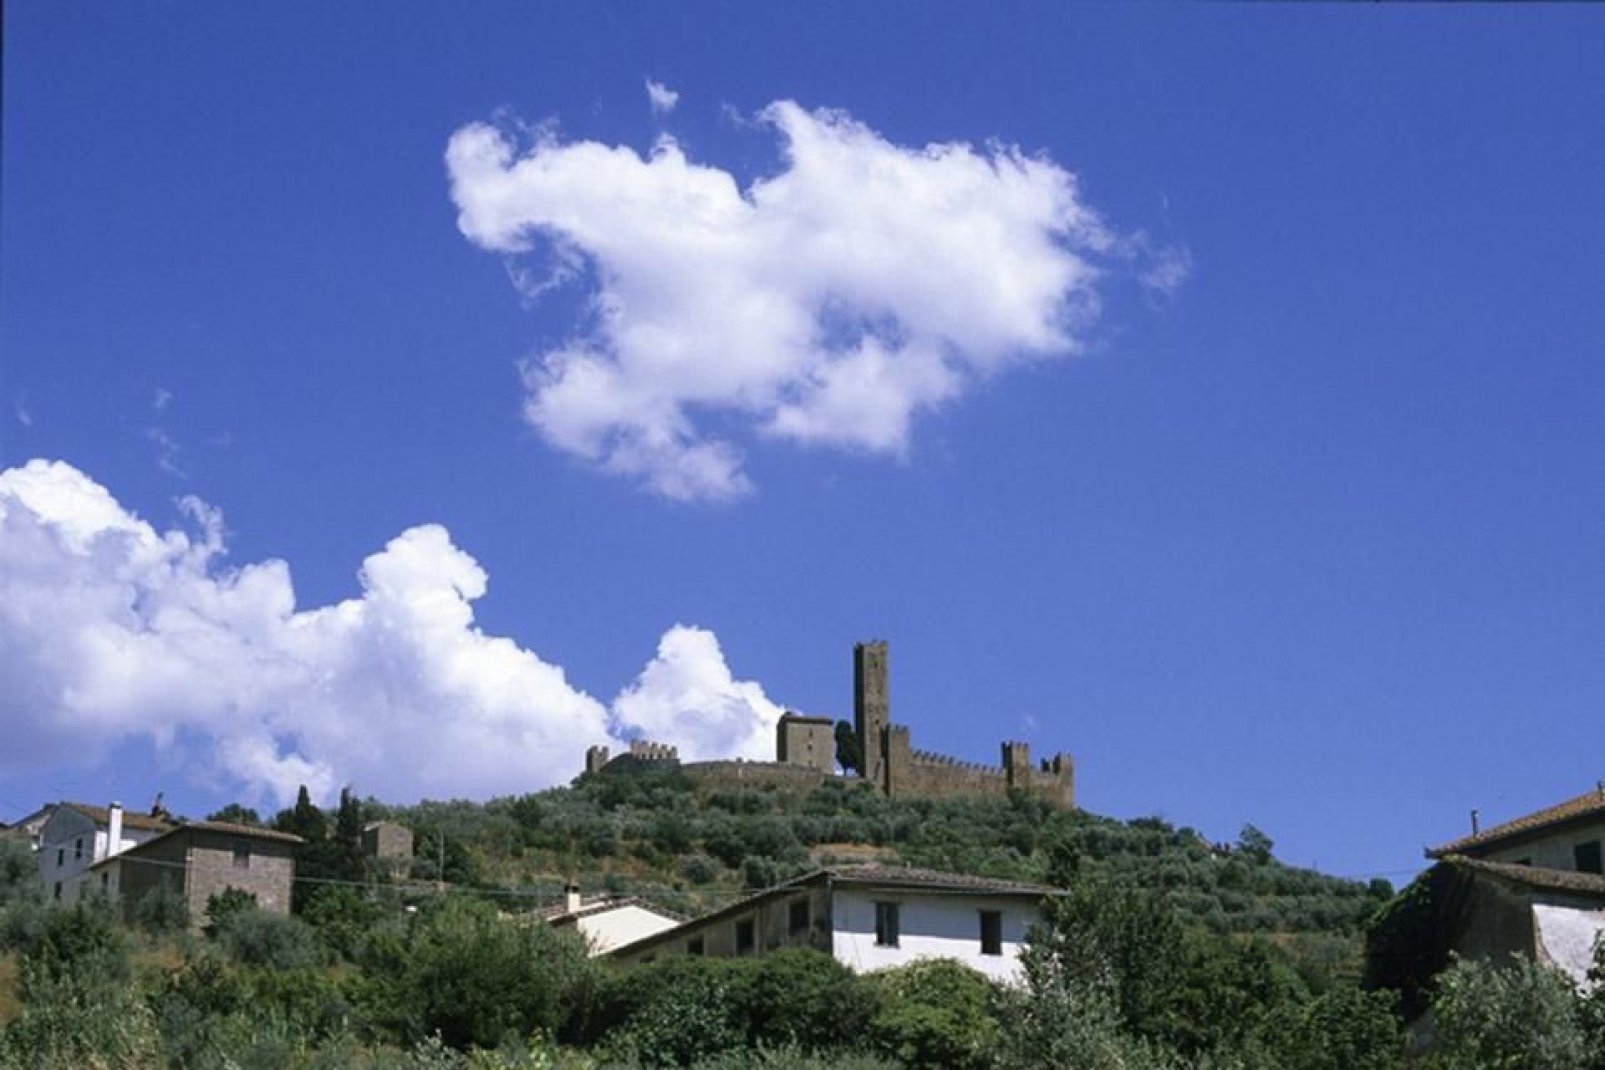 El paisaje de la región de Arezzo está sembrado de numerosas iglesias parroquiales, castillos y burgos medievales. Entre ellos, destaca por su belleza Poppi, uno de los burgos más hermosos de Italia.